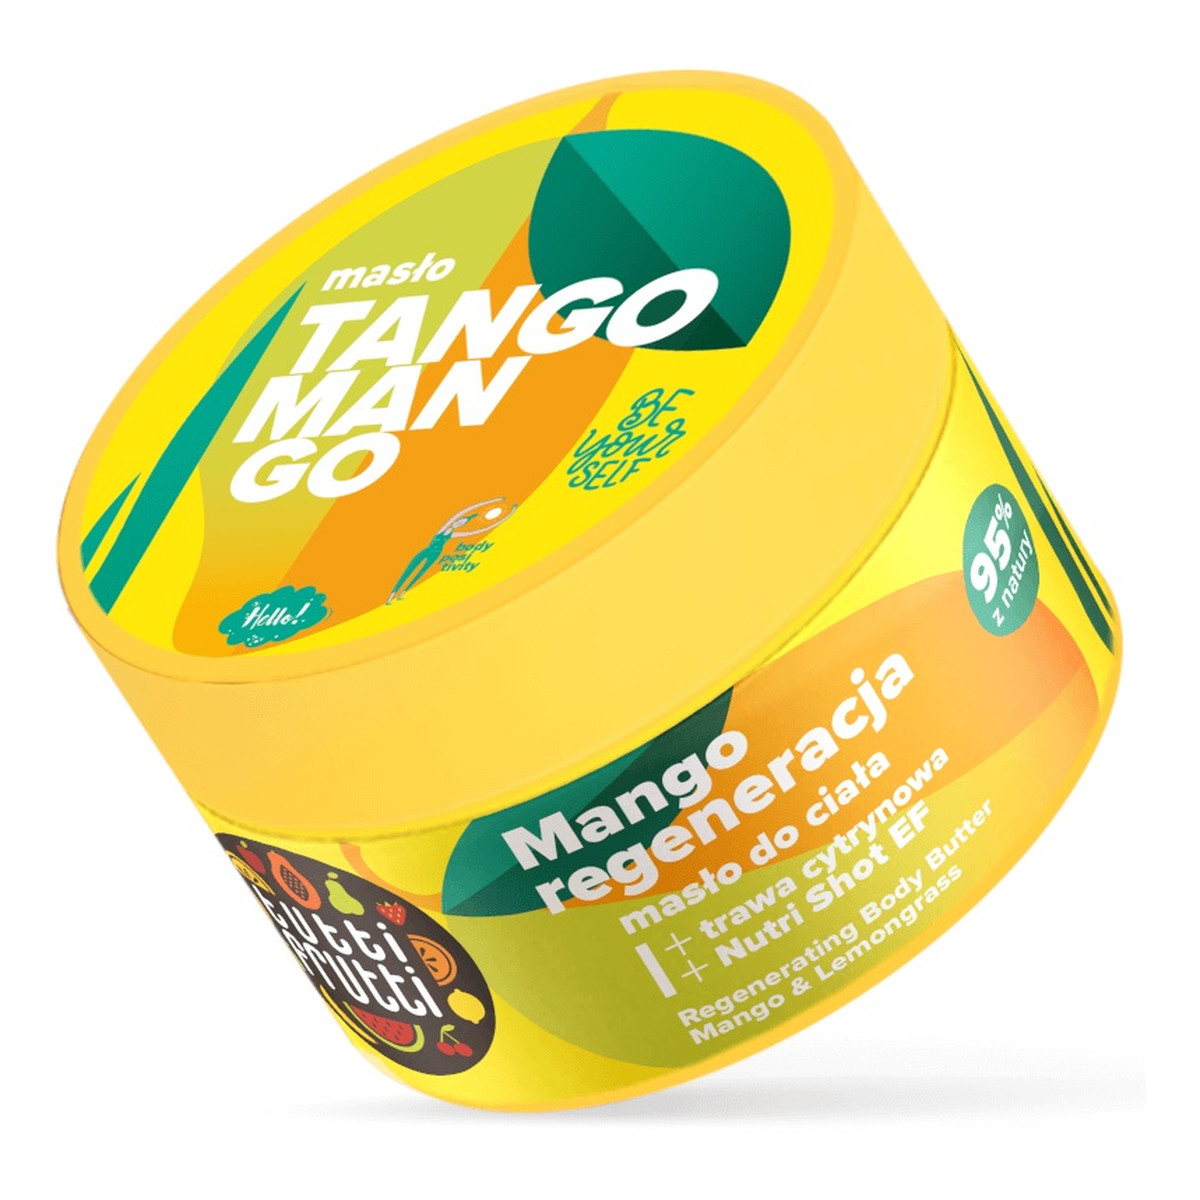 Farmona Tutti frutti regenerujące masło do ciała mango i trawa cytrynowa + nutri shot ef